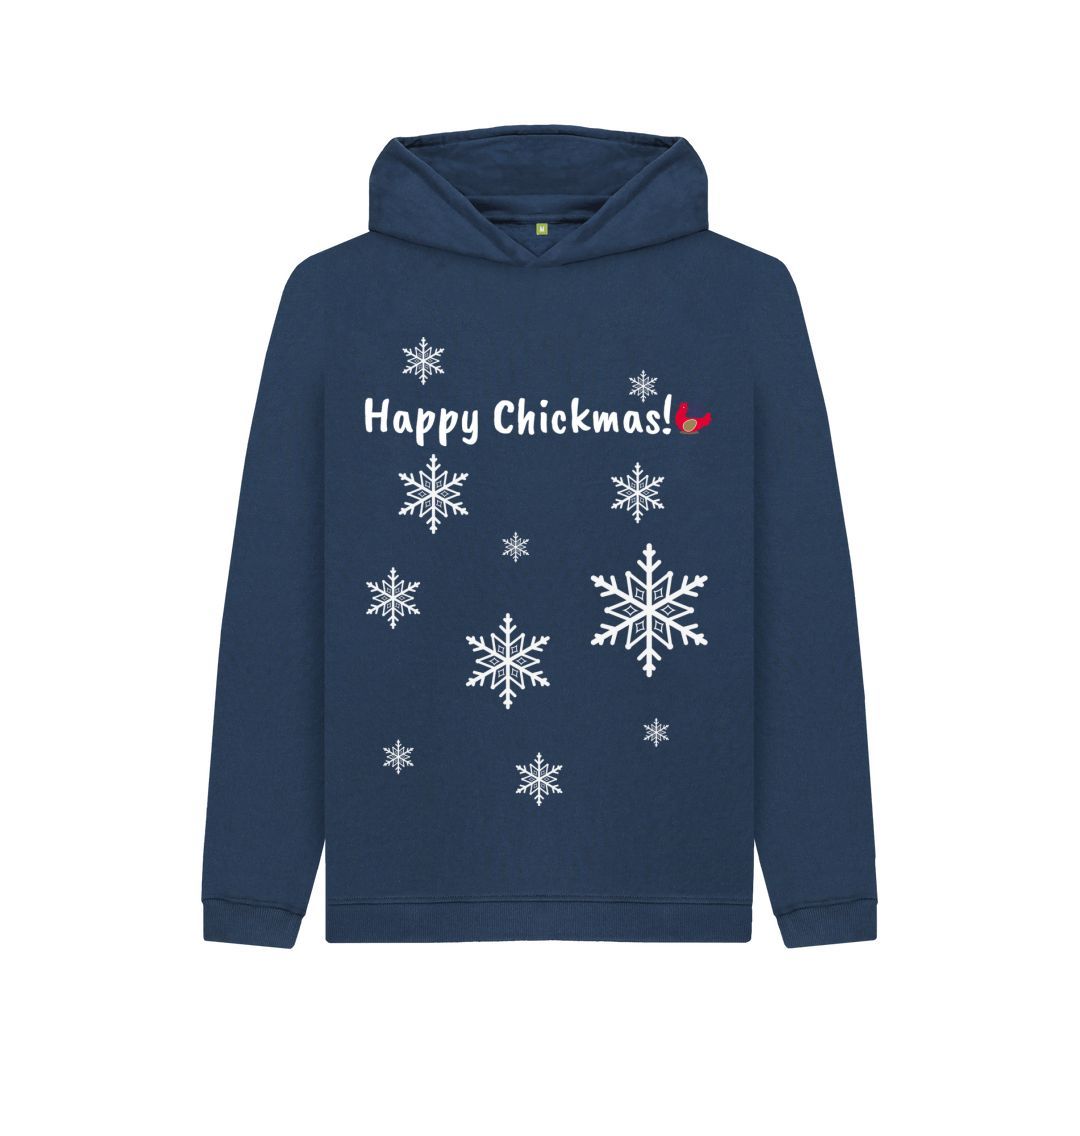 Navy Blue Kids Unisex Hoodie - Happy Chickmas! Snowflake